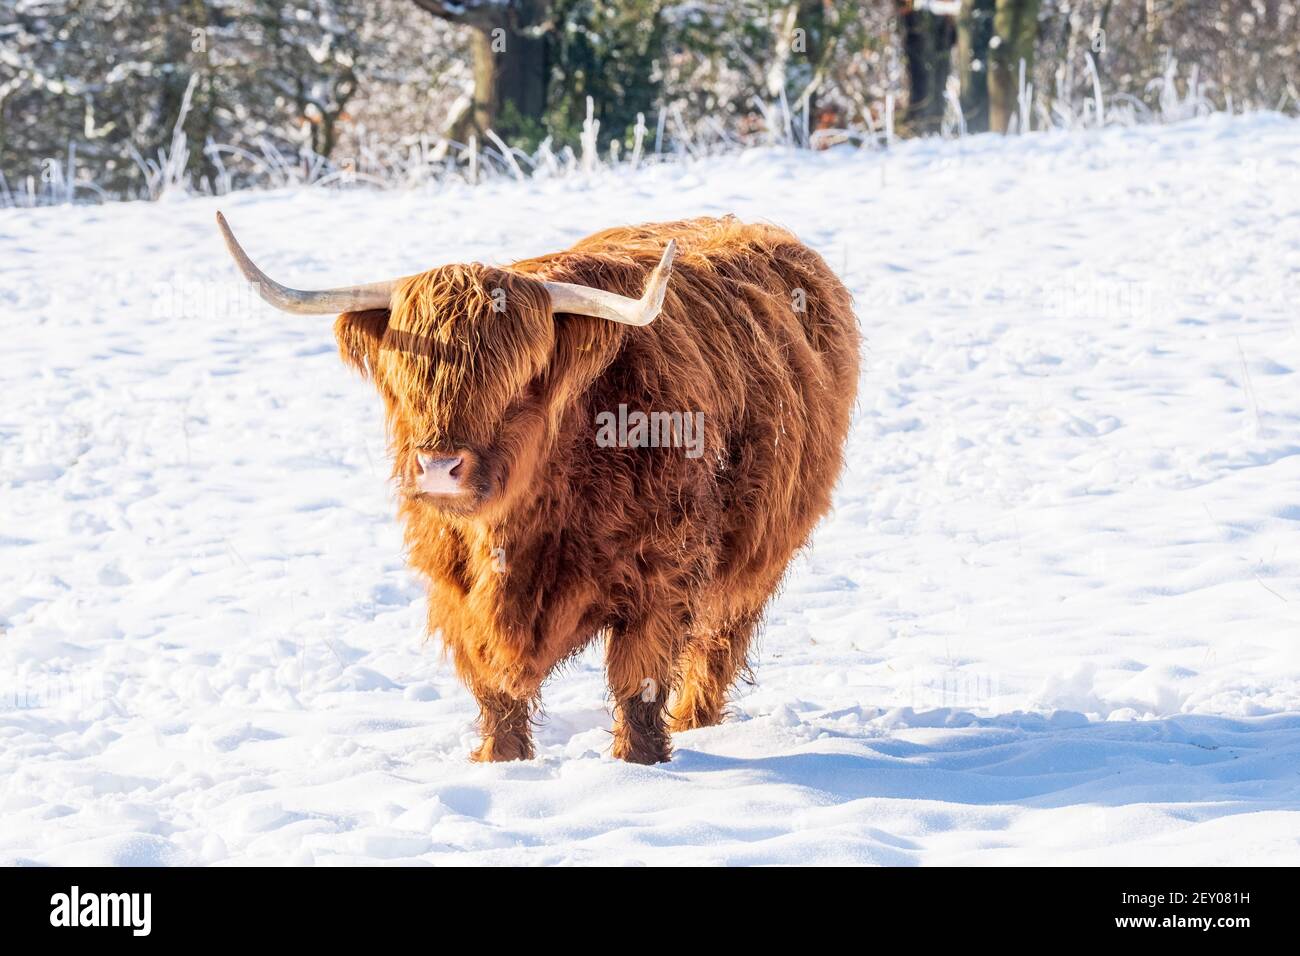 Bétail en hiver. Scène écossaise de Wintry avec le bétail des Highlands dans le champ de neige Banque D'Images